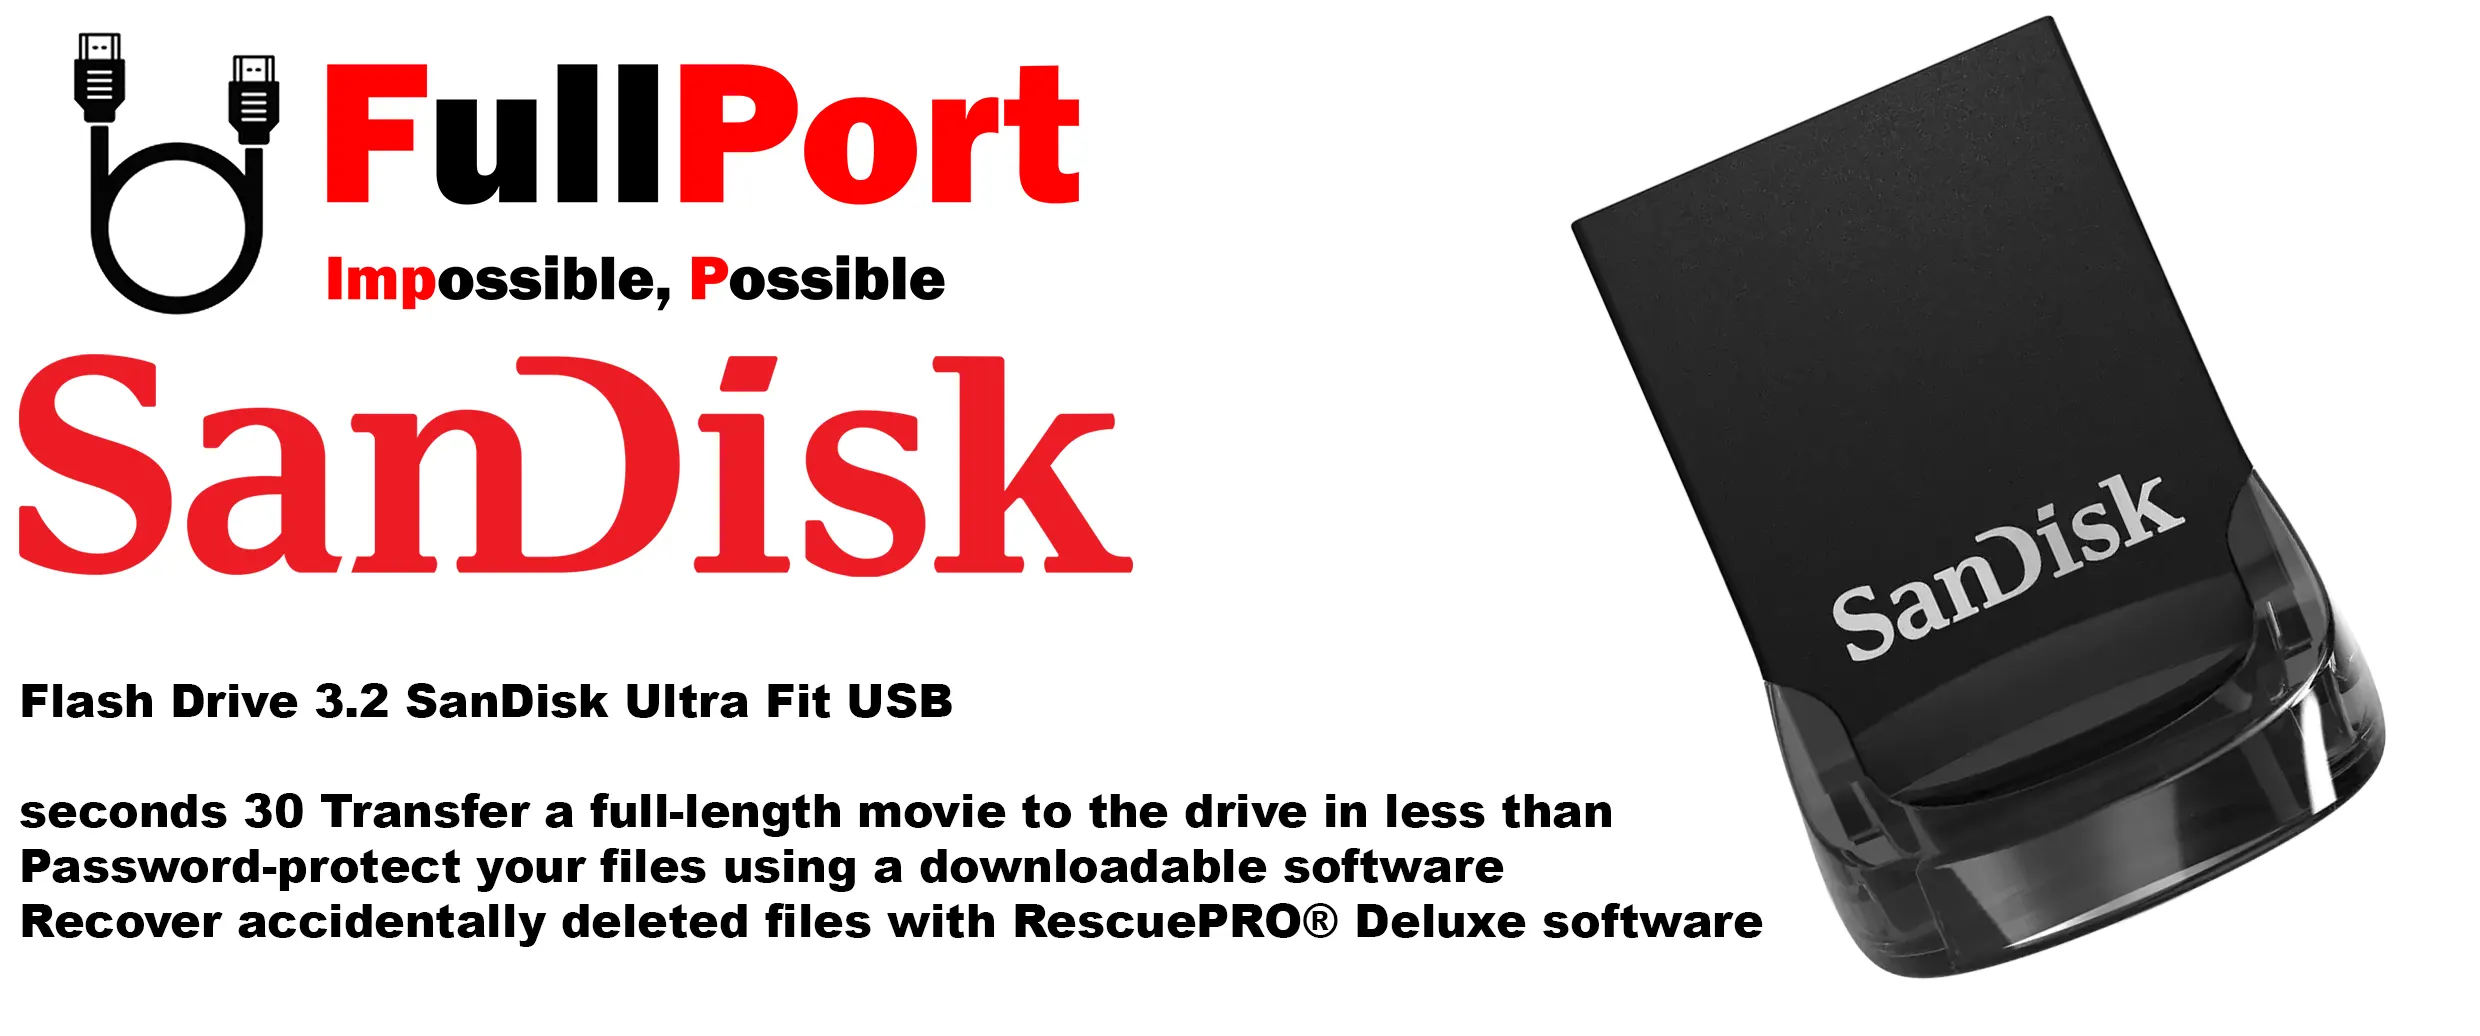 خرید اینترنتی فلش سن دیسک مدل SDCZ430 Ultra Fit USB3.2 از فروشگاه اینترنتی فول پورت